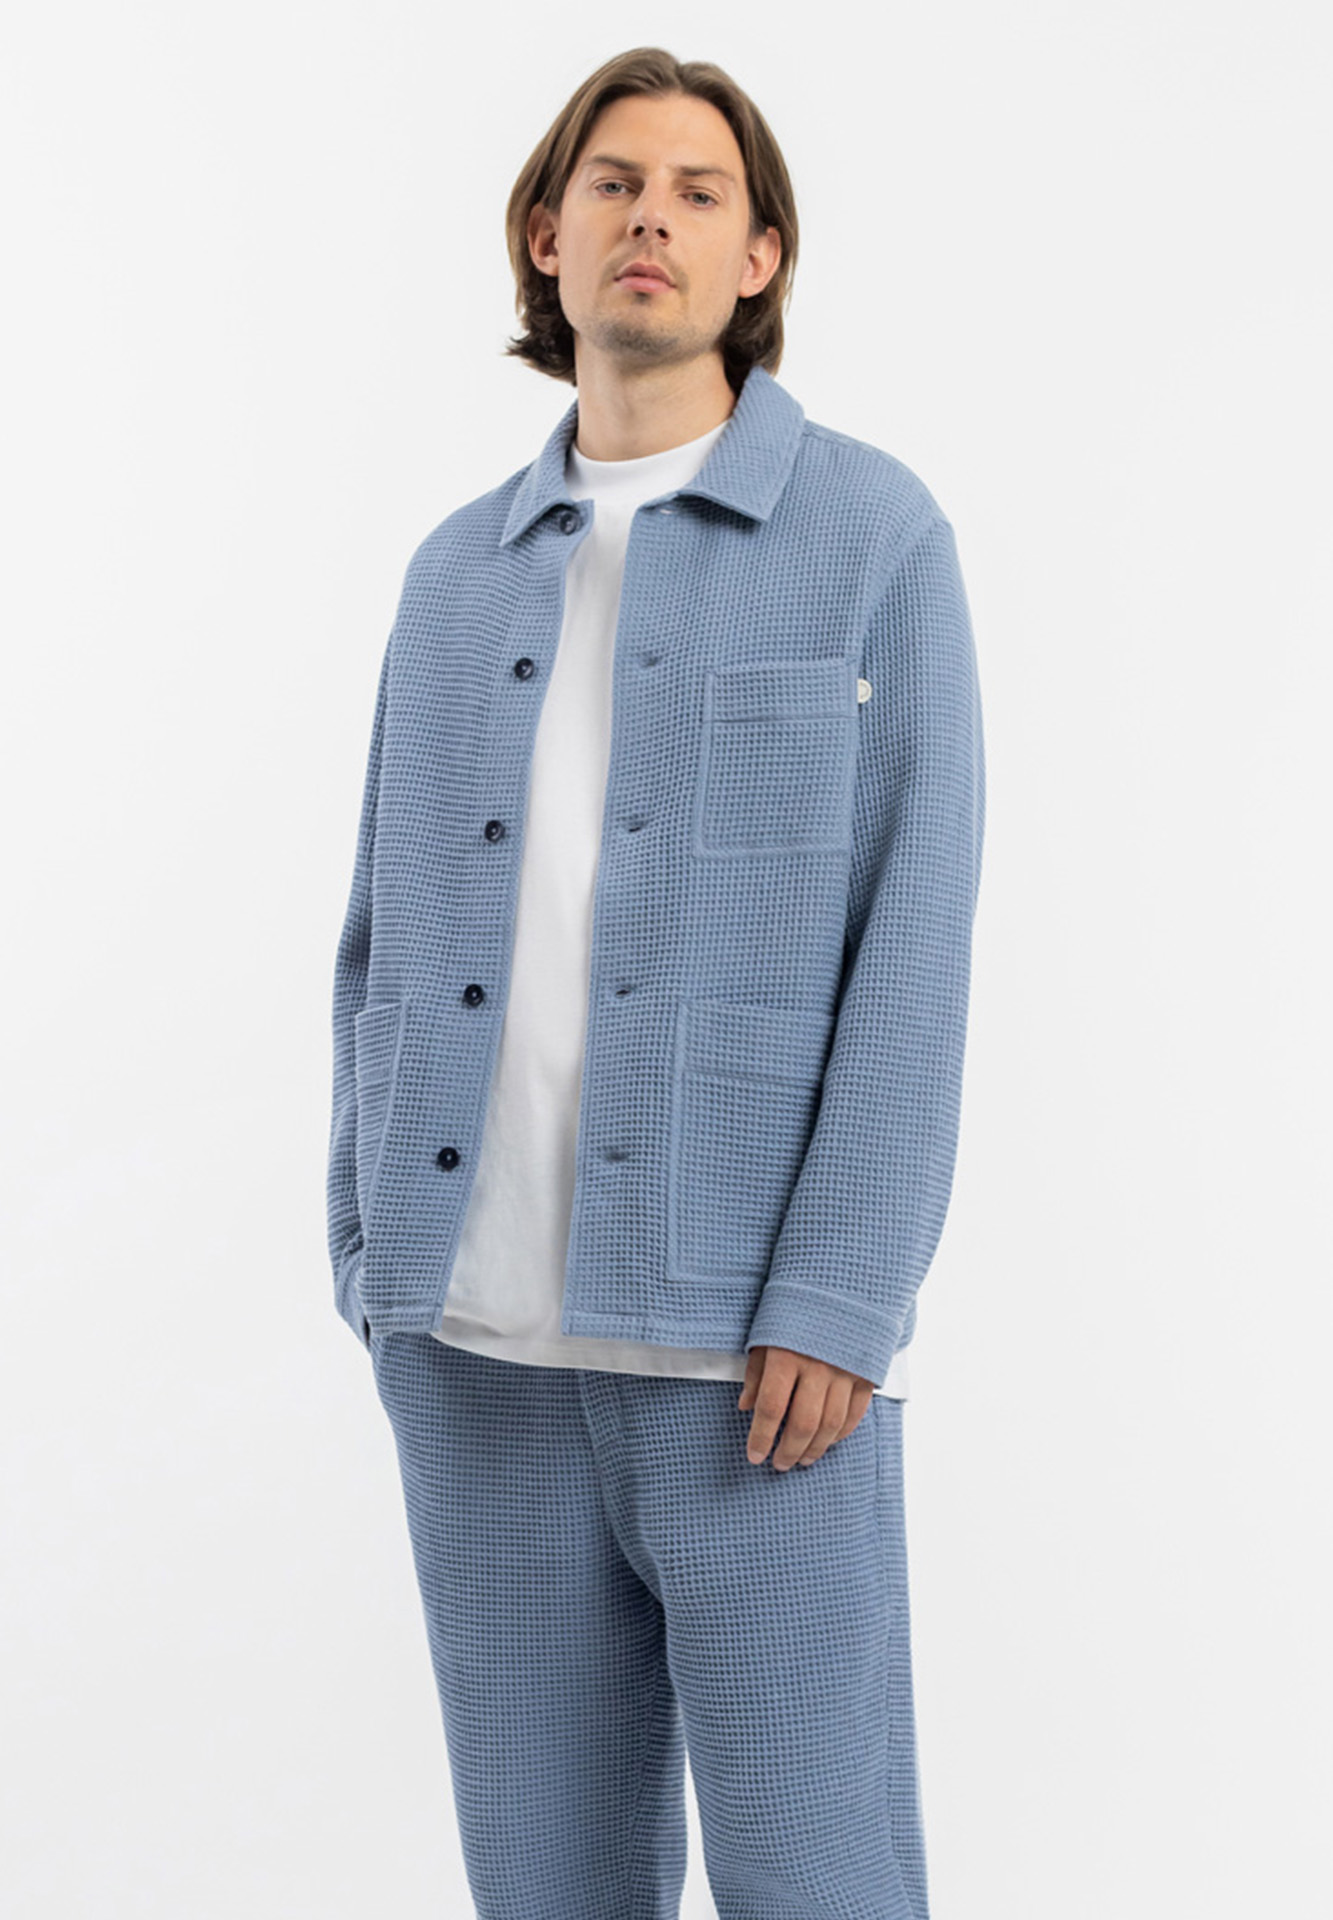 ROTHOLZ Workwear Overjacket stone blue XL